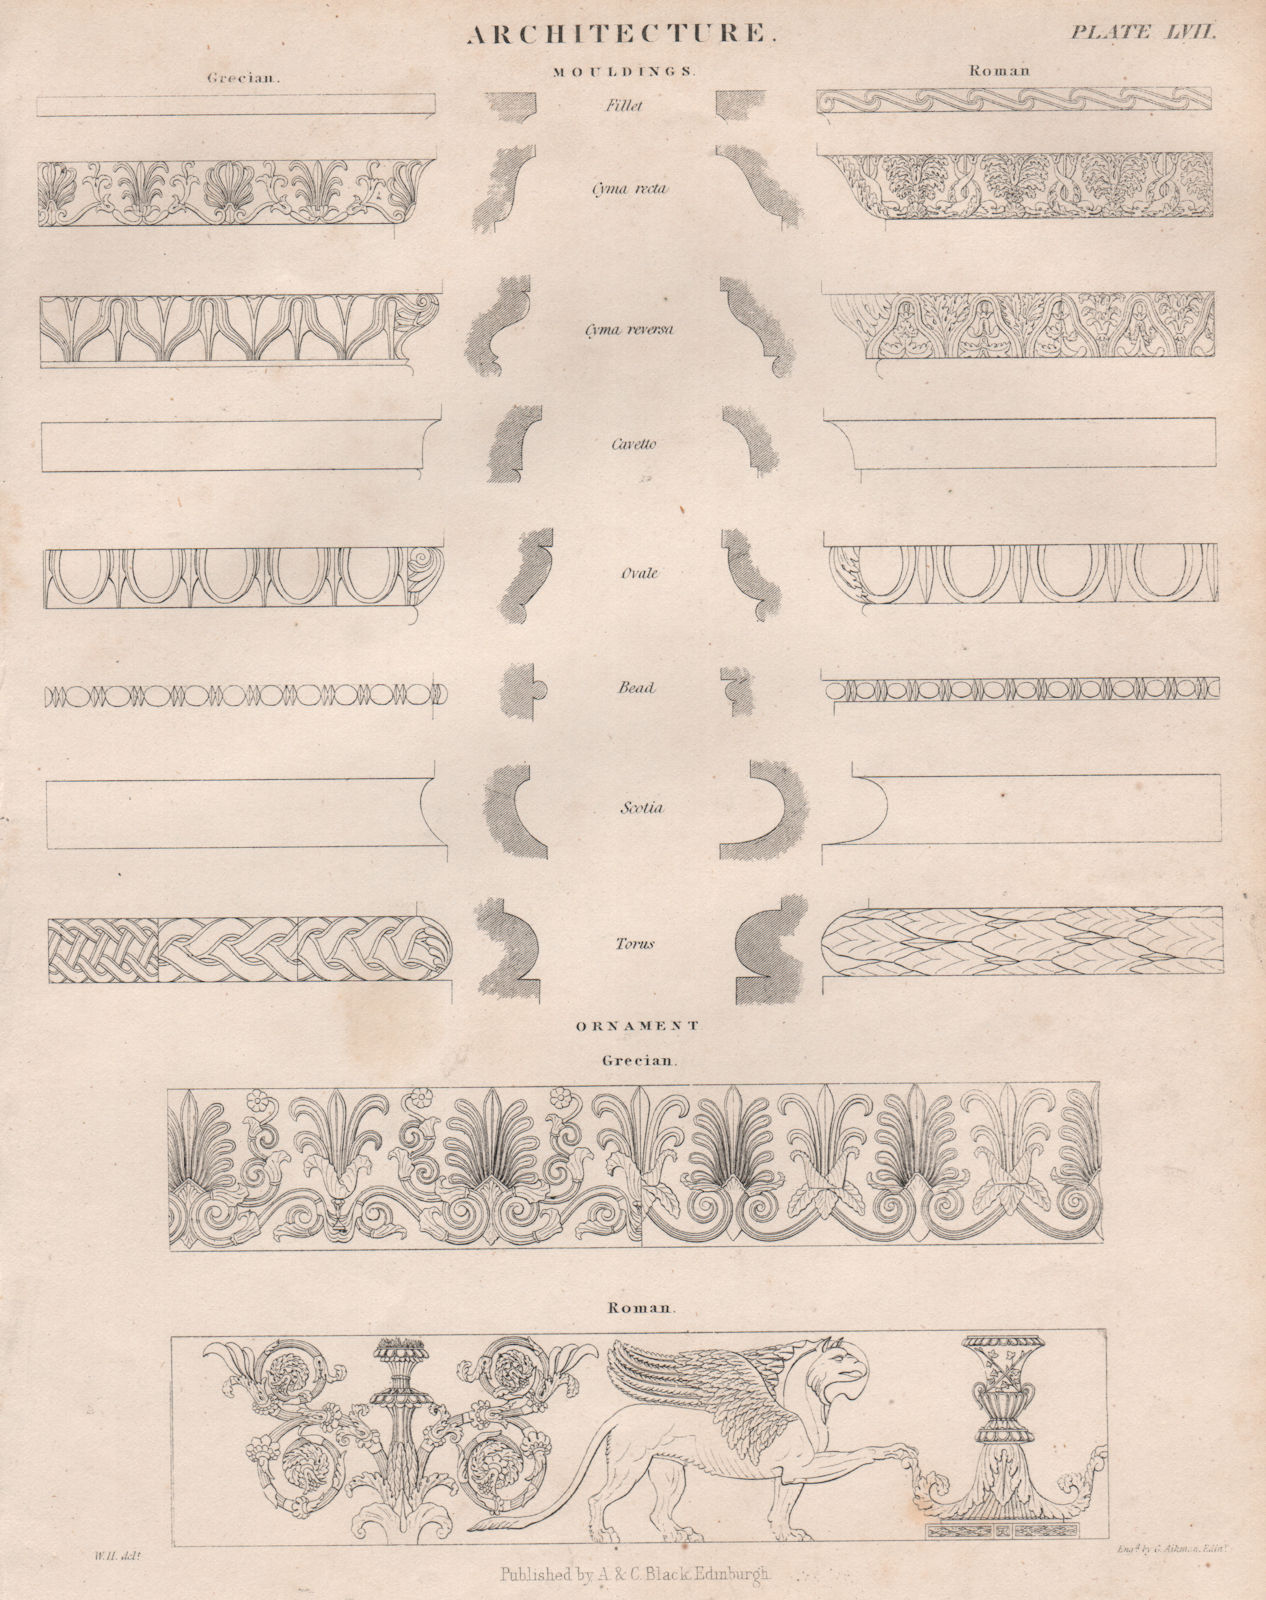 Associate Product Architecture Mouldings; Grecian; Roman; Ornament Grecian; Roman. BRITANNICA 1860